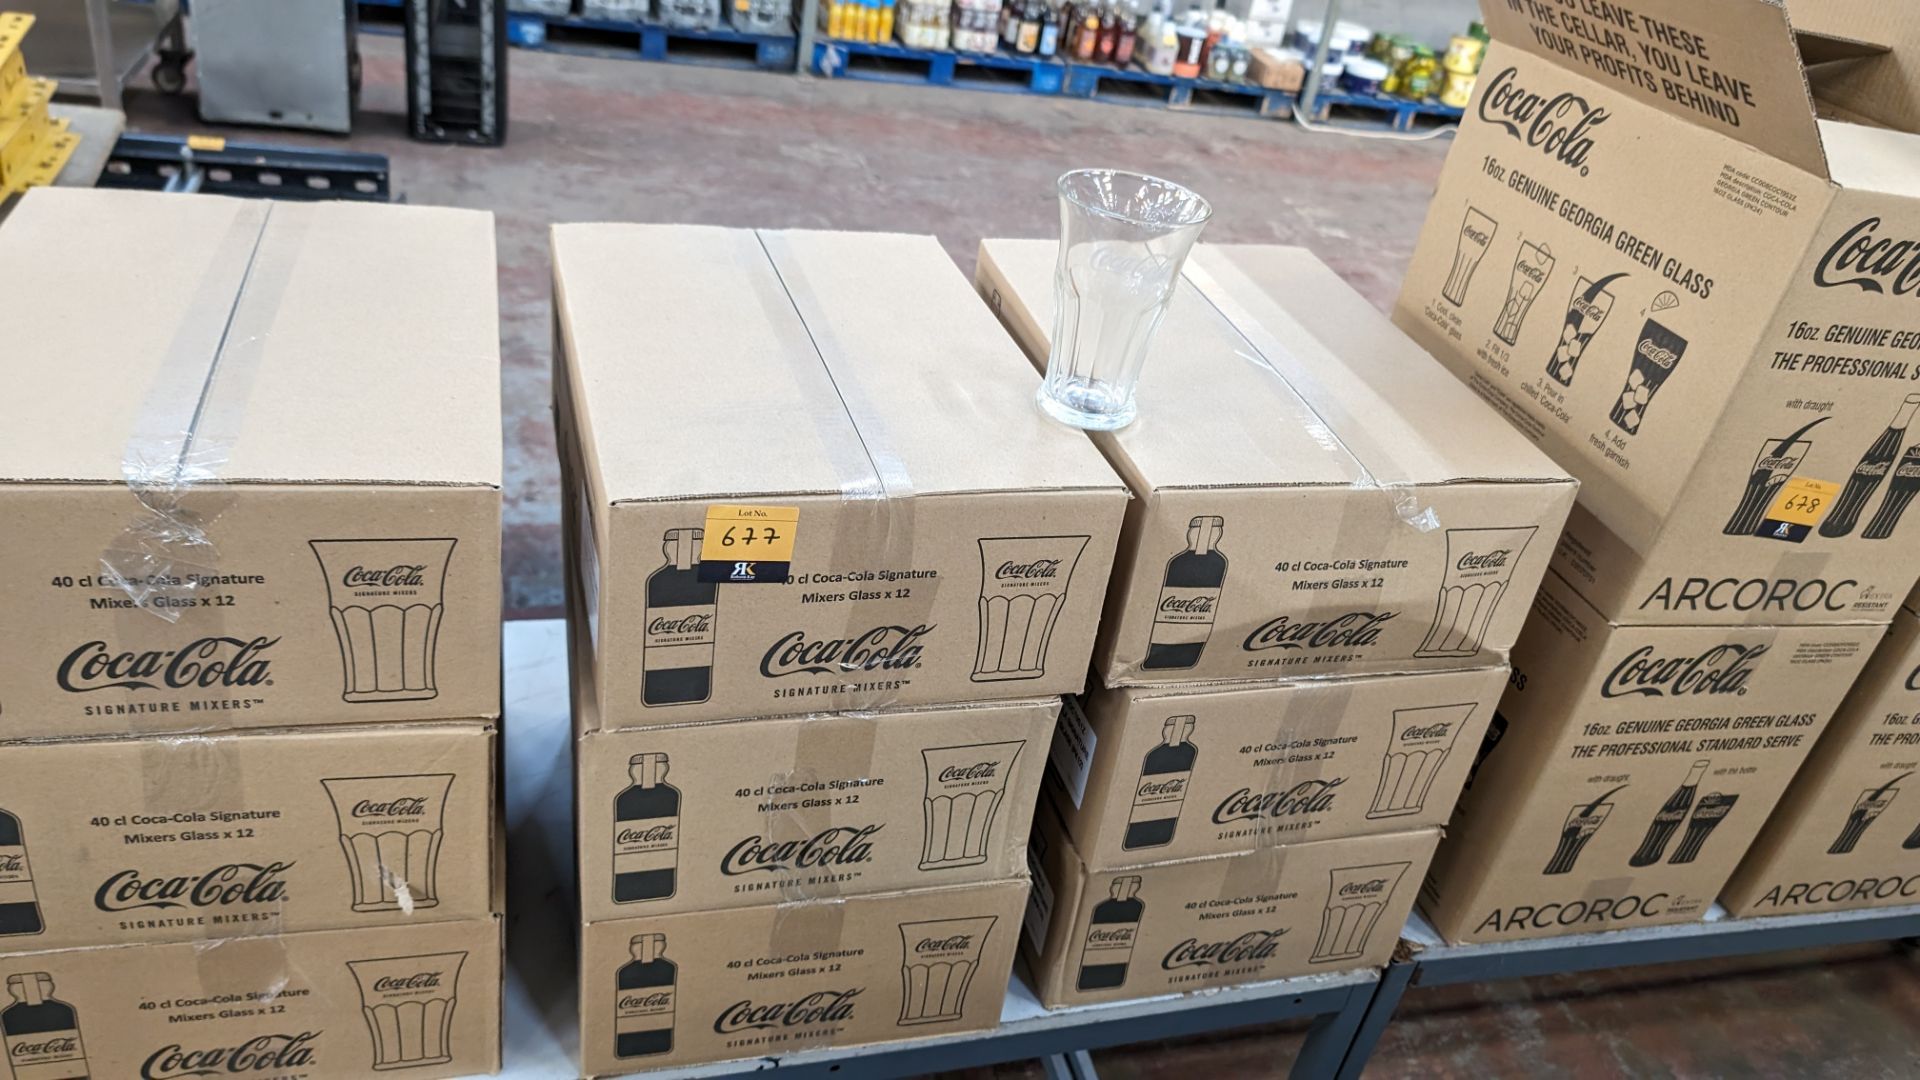 72 off Coca Cola 40cl Signature mixers glasses - 6 cartons